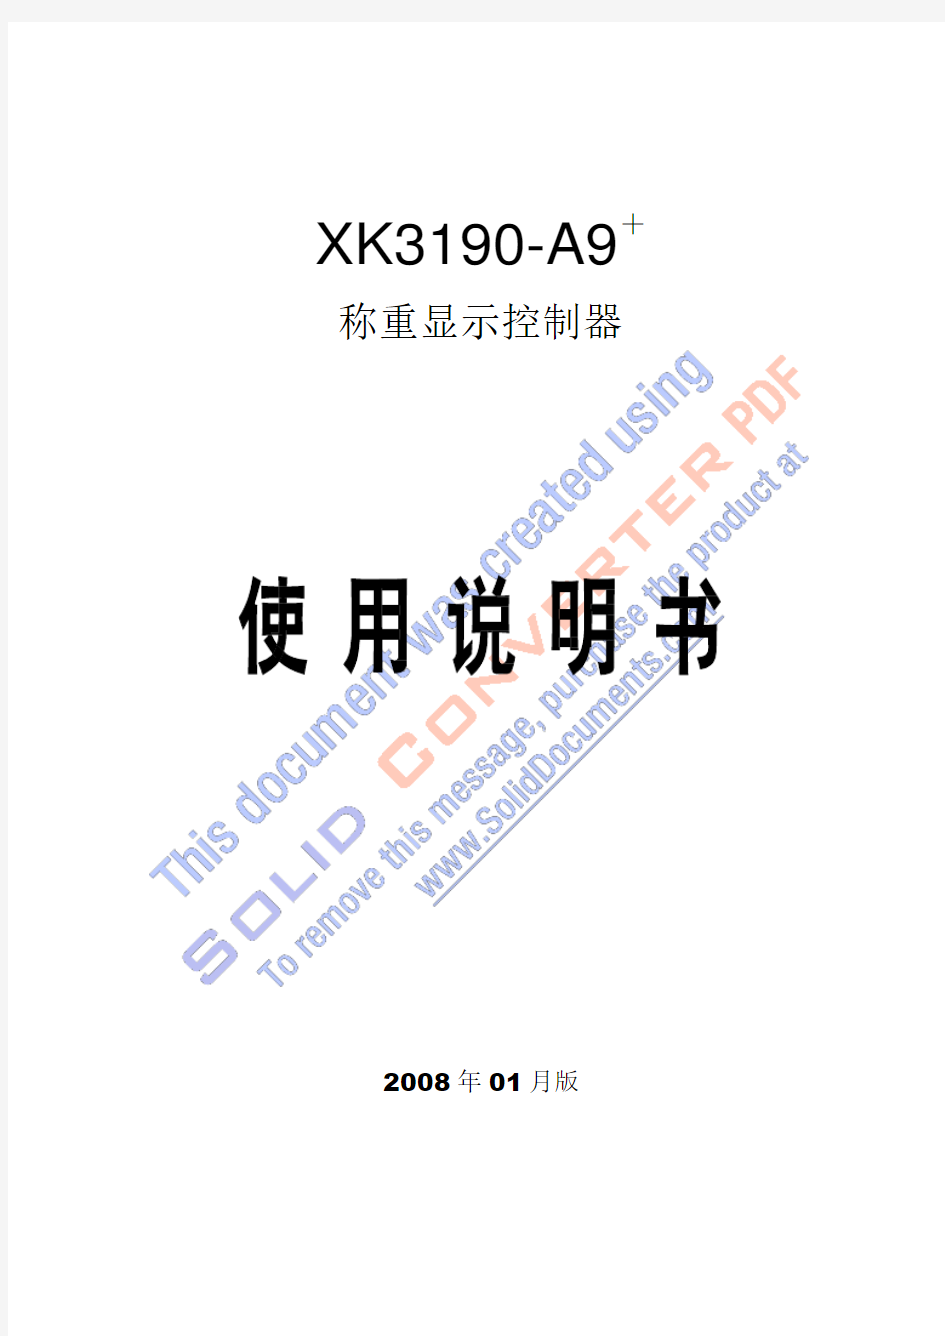 耀华XK3190-A9+使用说明书